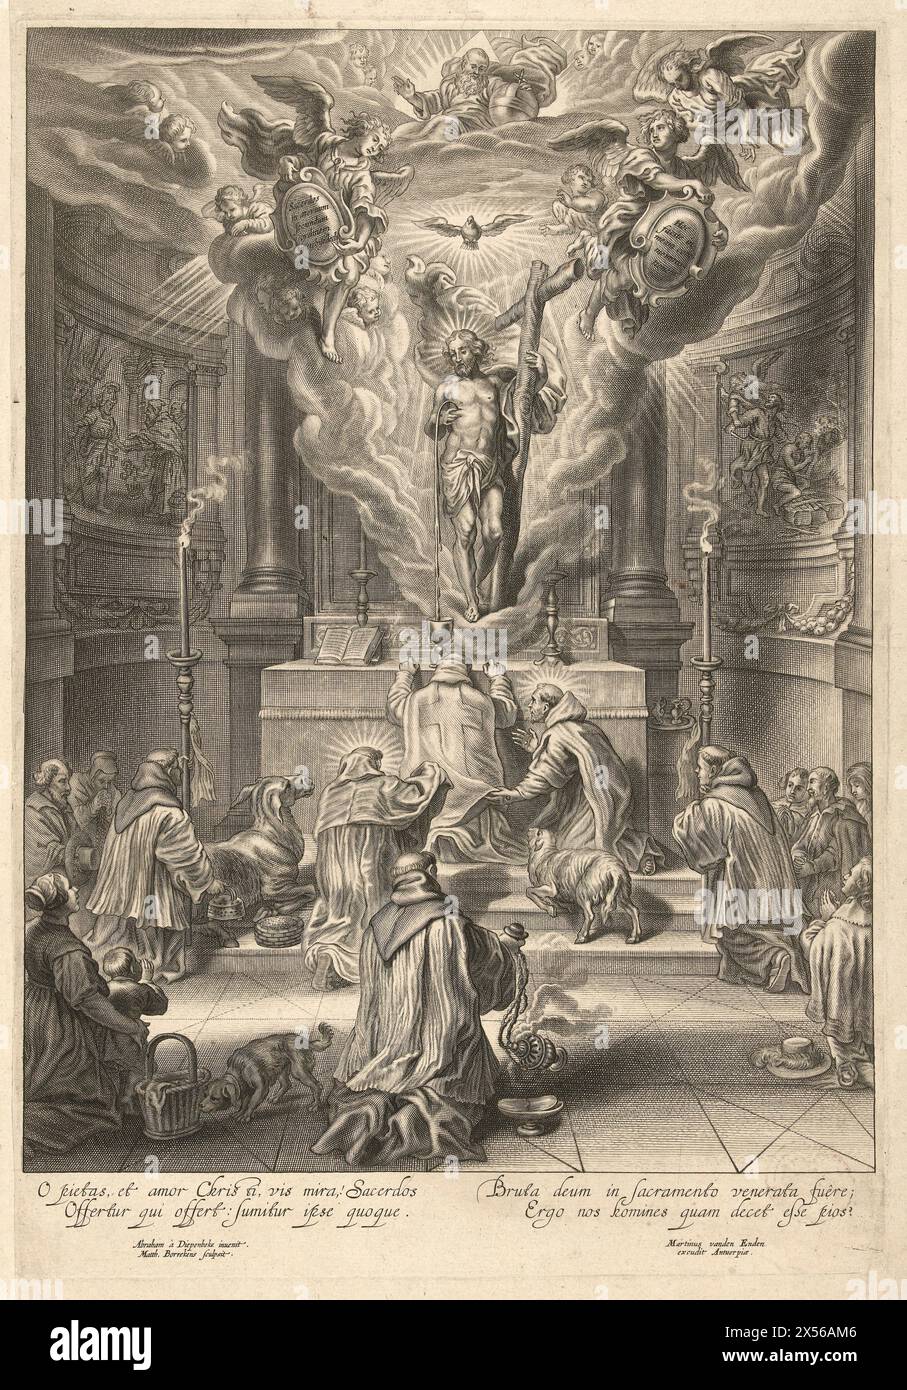 Messa di San Gregorio con l'apparizione di Cristo, Mattheus Borrekens, dopo Abraham van Diepenbeeck, 1625 - 1670 Foto Stock